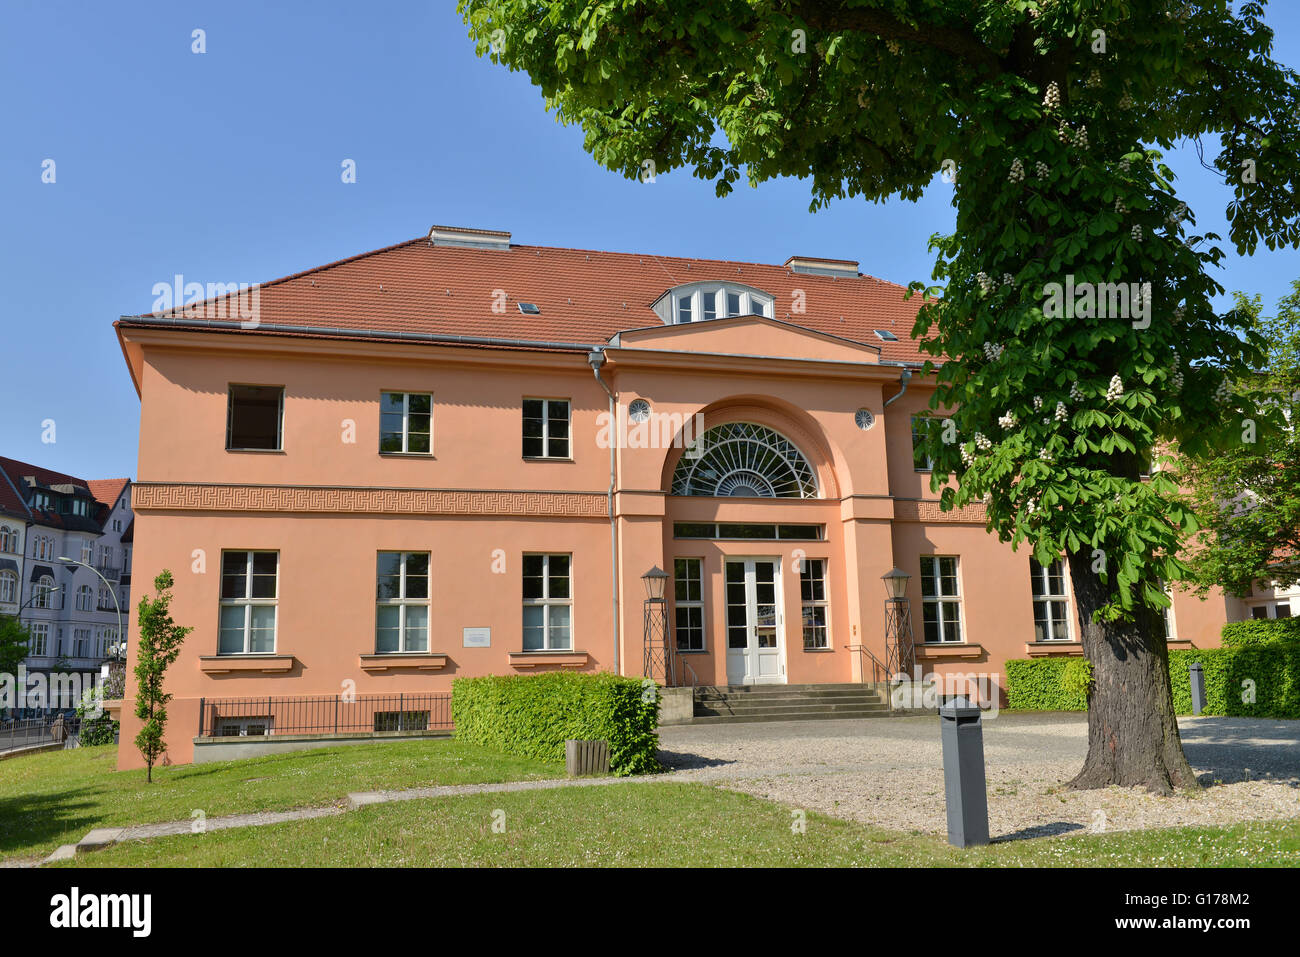 Steglitz, Wrangelschloesschen namberger, Schlossstrasse, Steglitz, Berlin, Deutschland / Wrangelschlösschen Banque D'Images